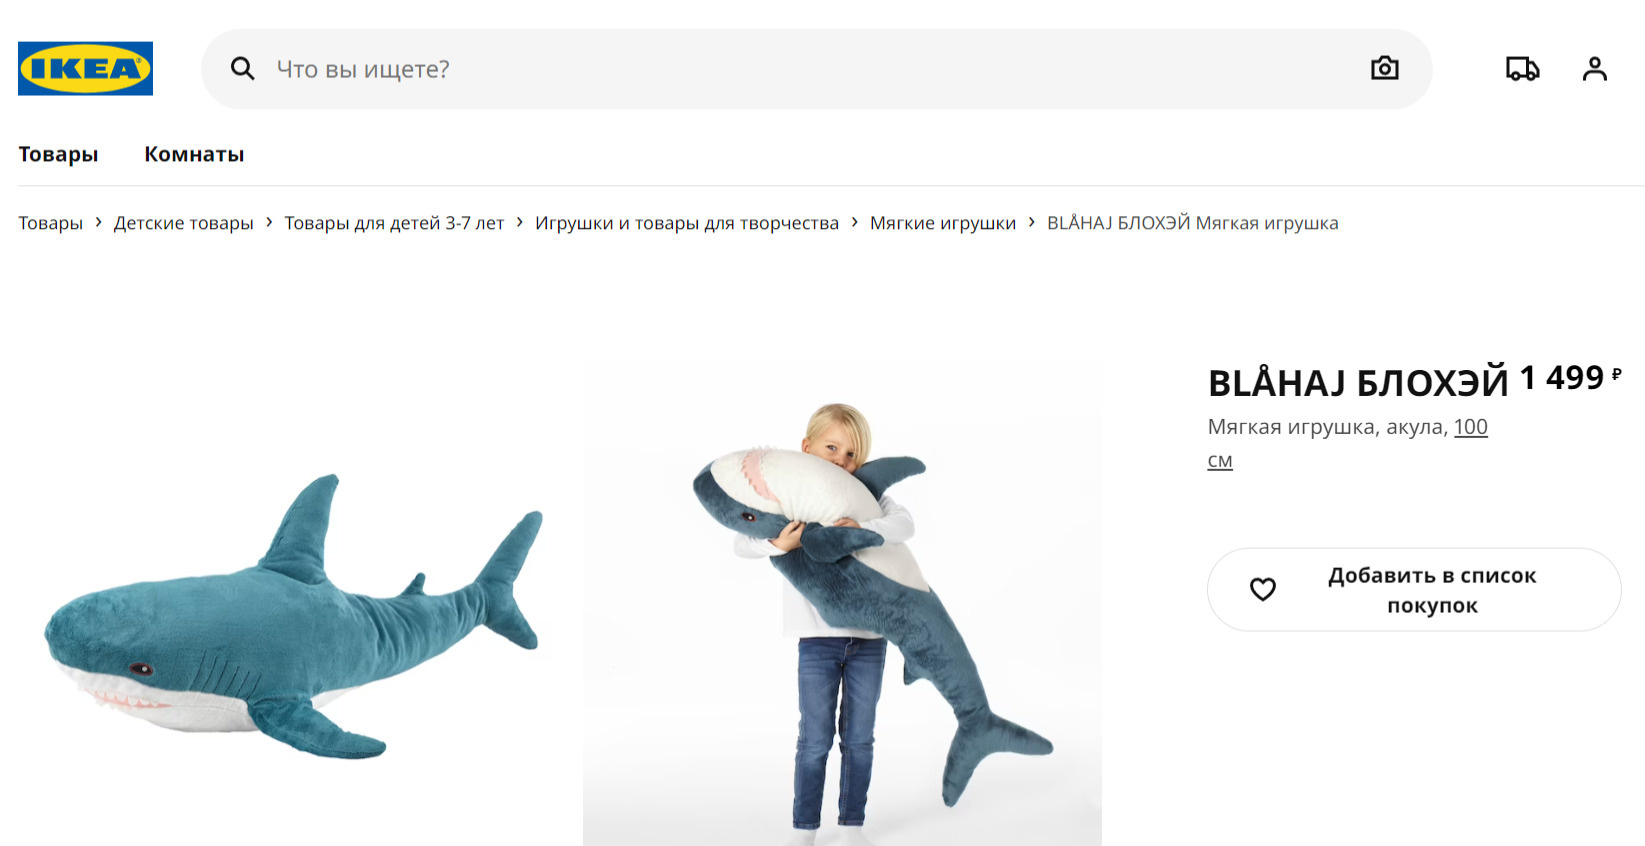 Плюшевая акула в IKEA стоит 1499 рублей